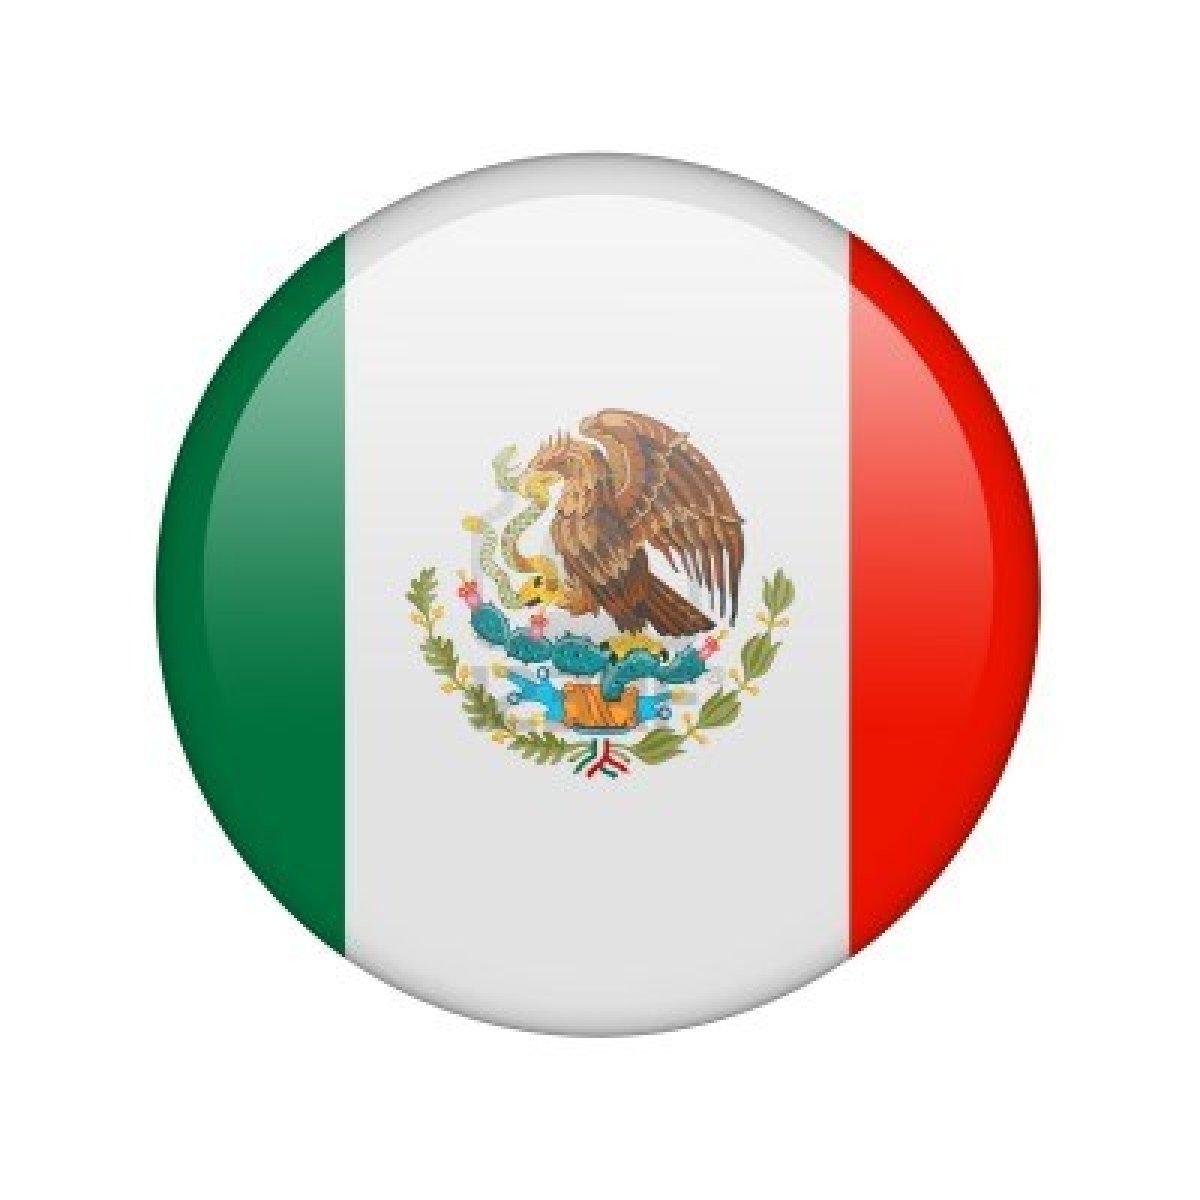 0 Result Images of Logo Bandera De Mexico Blanco Y Negro - PNG Image ...